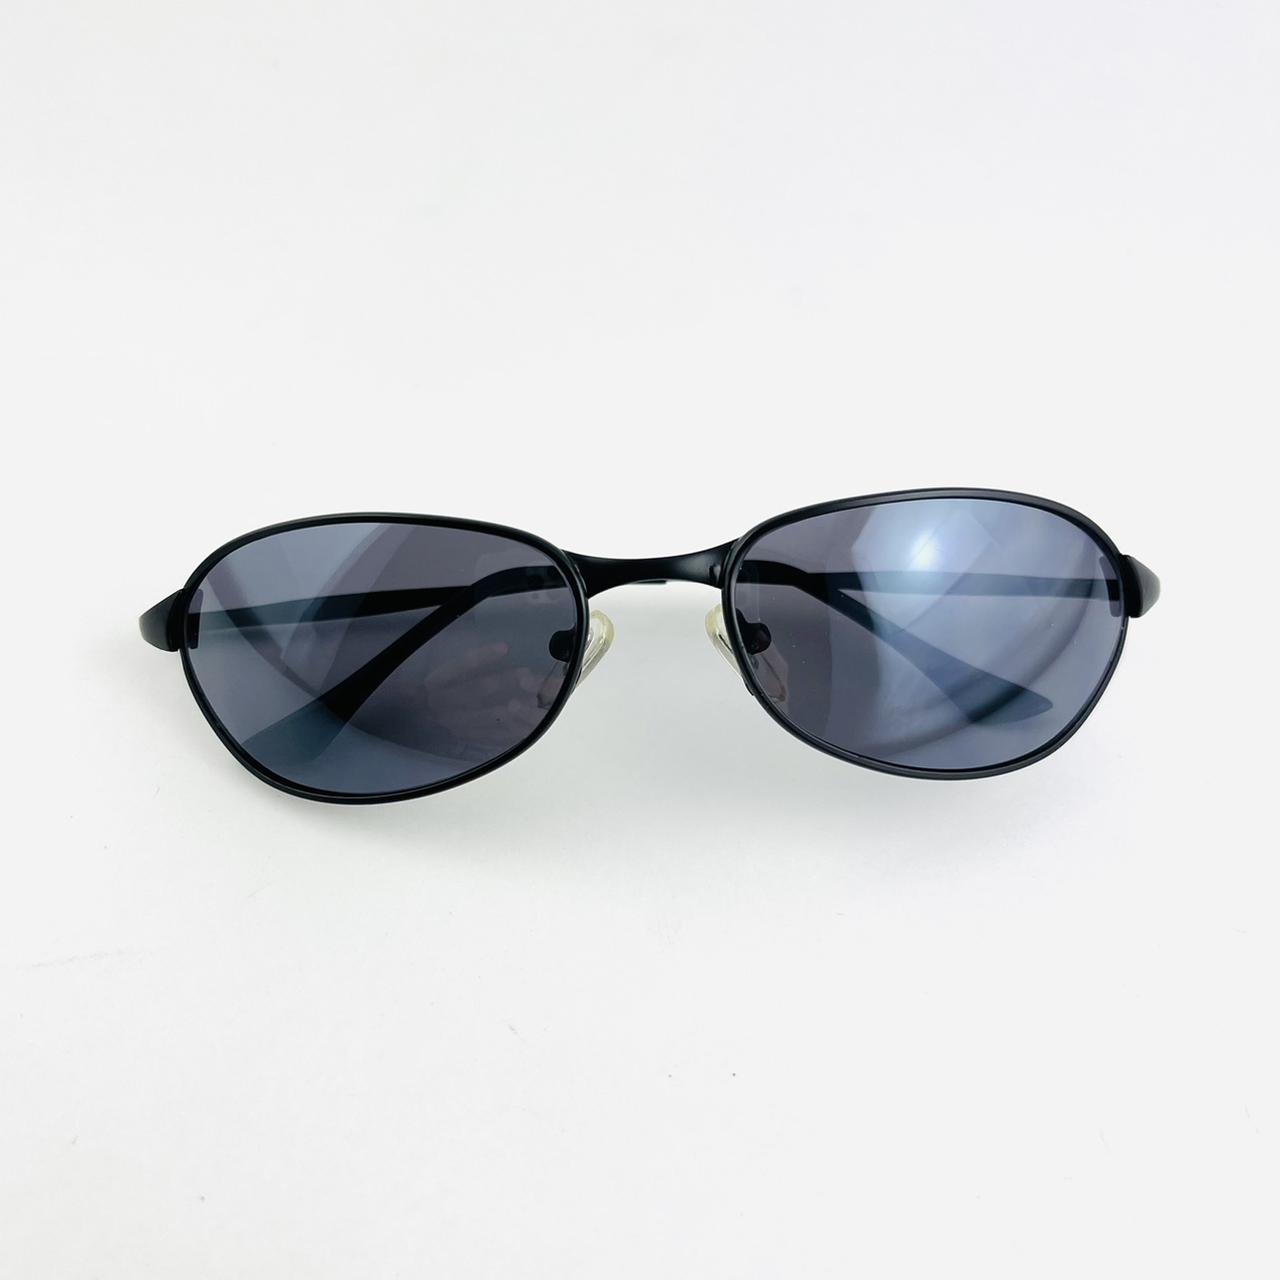 Vintage 90s Black Metal Frame Deadstock Sunglasses... - Depop